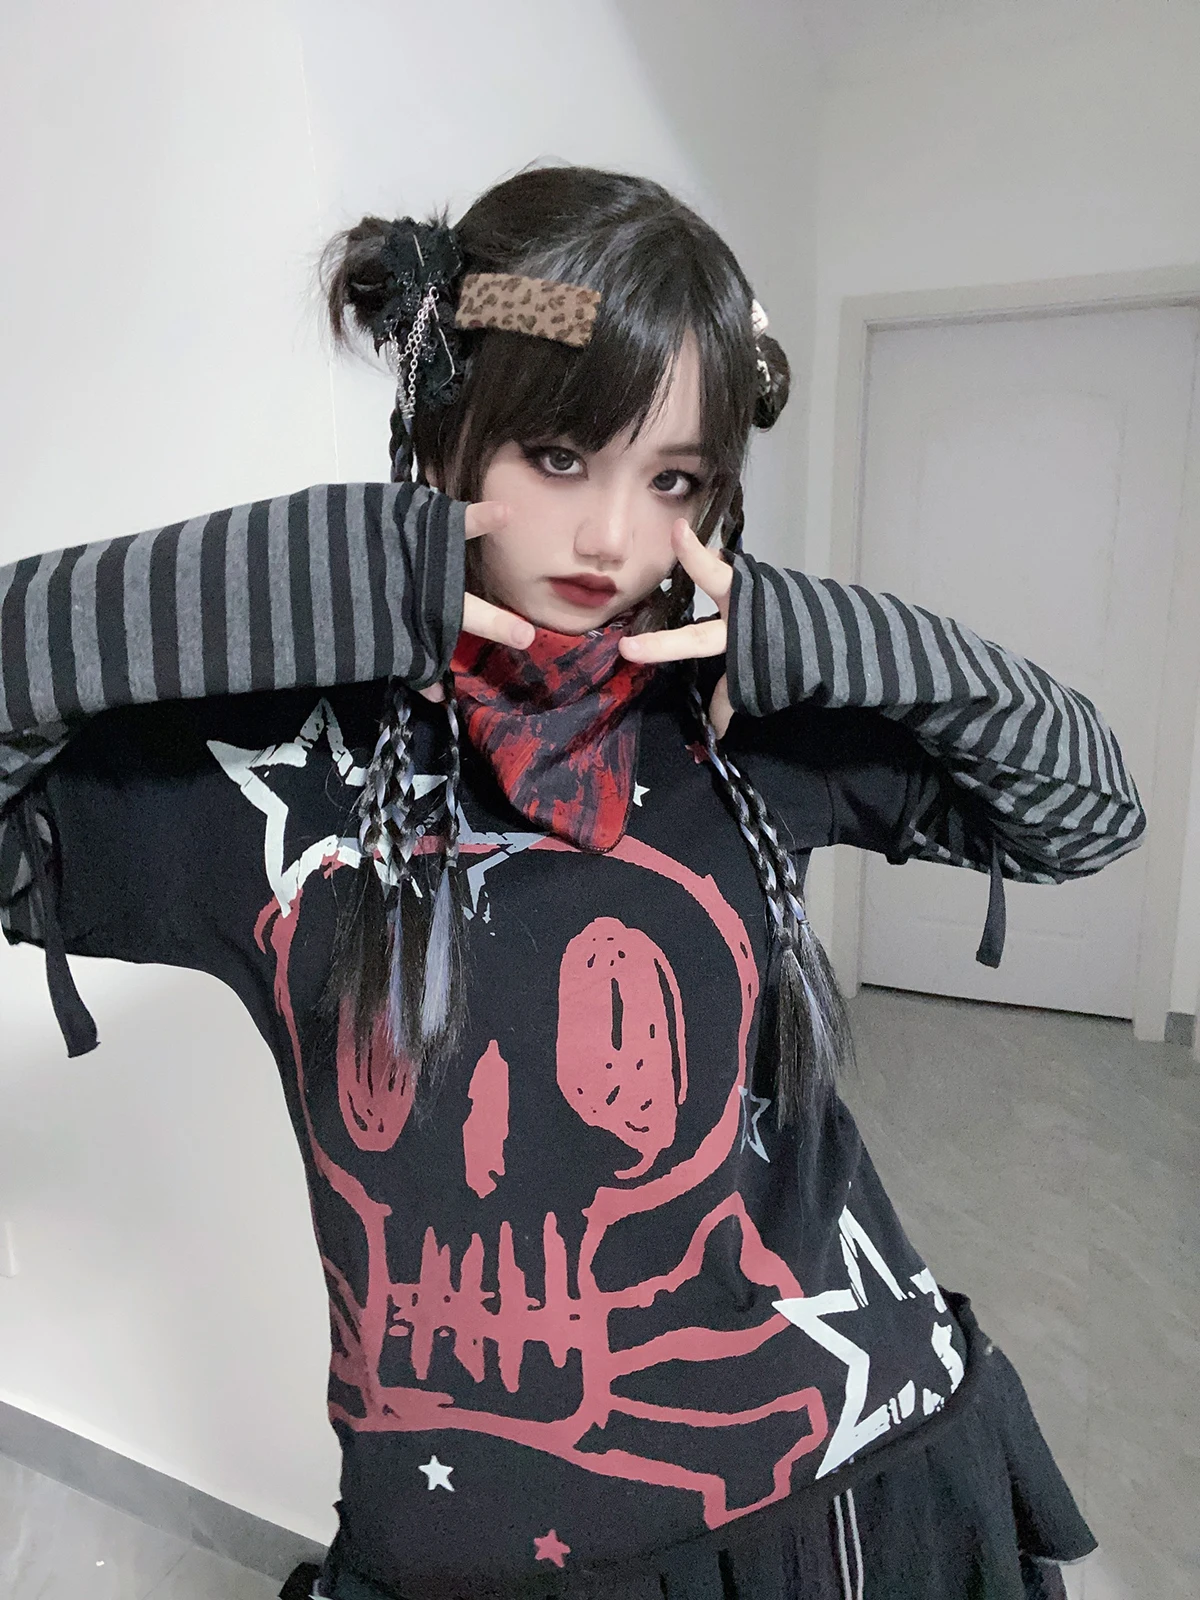 gótico do punk estrela crânio impressão tshirt harajuku feminino outono manga longa falso duas peças camisa grunge rocha alt roupas